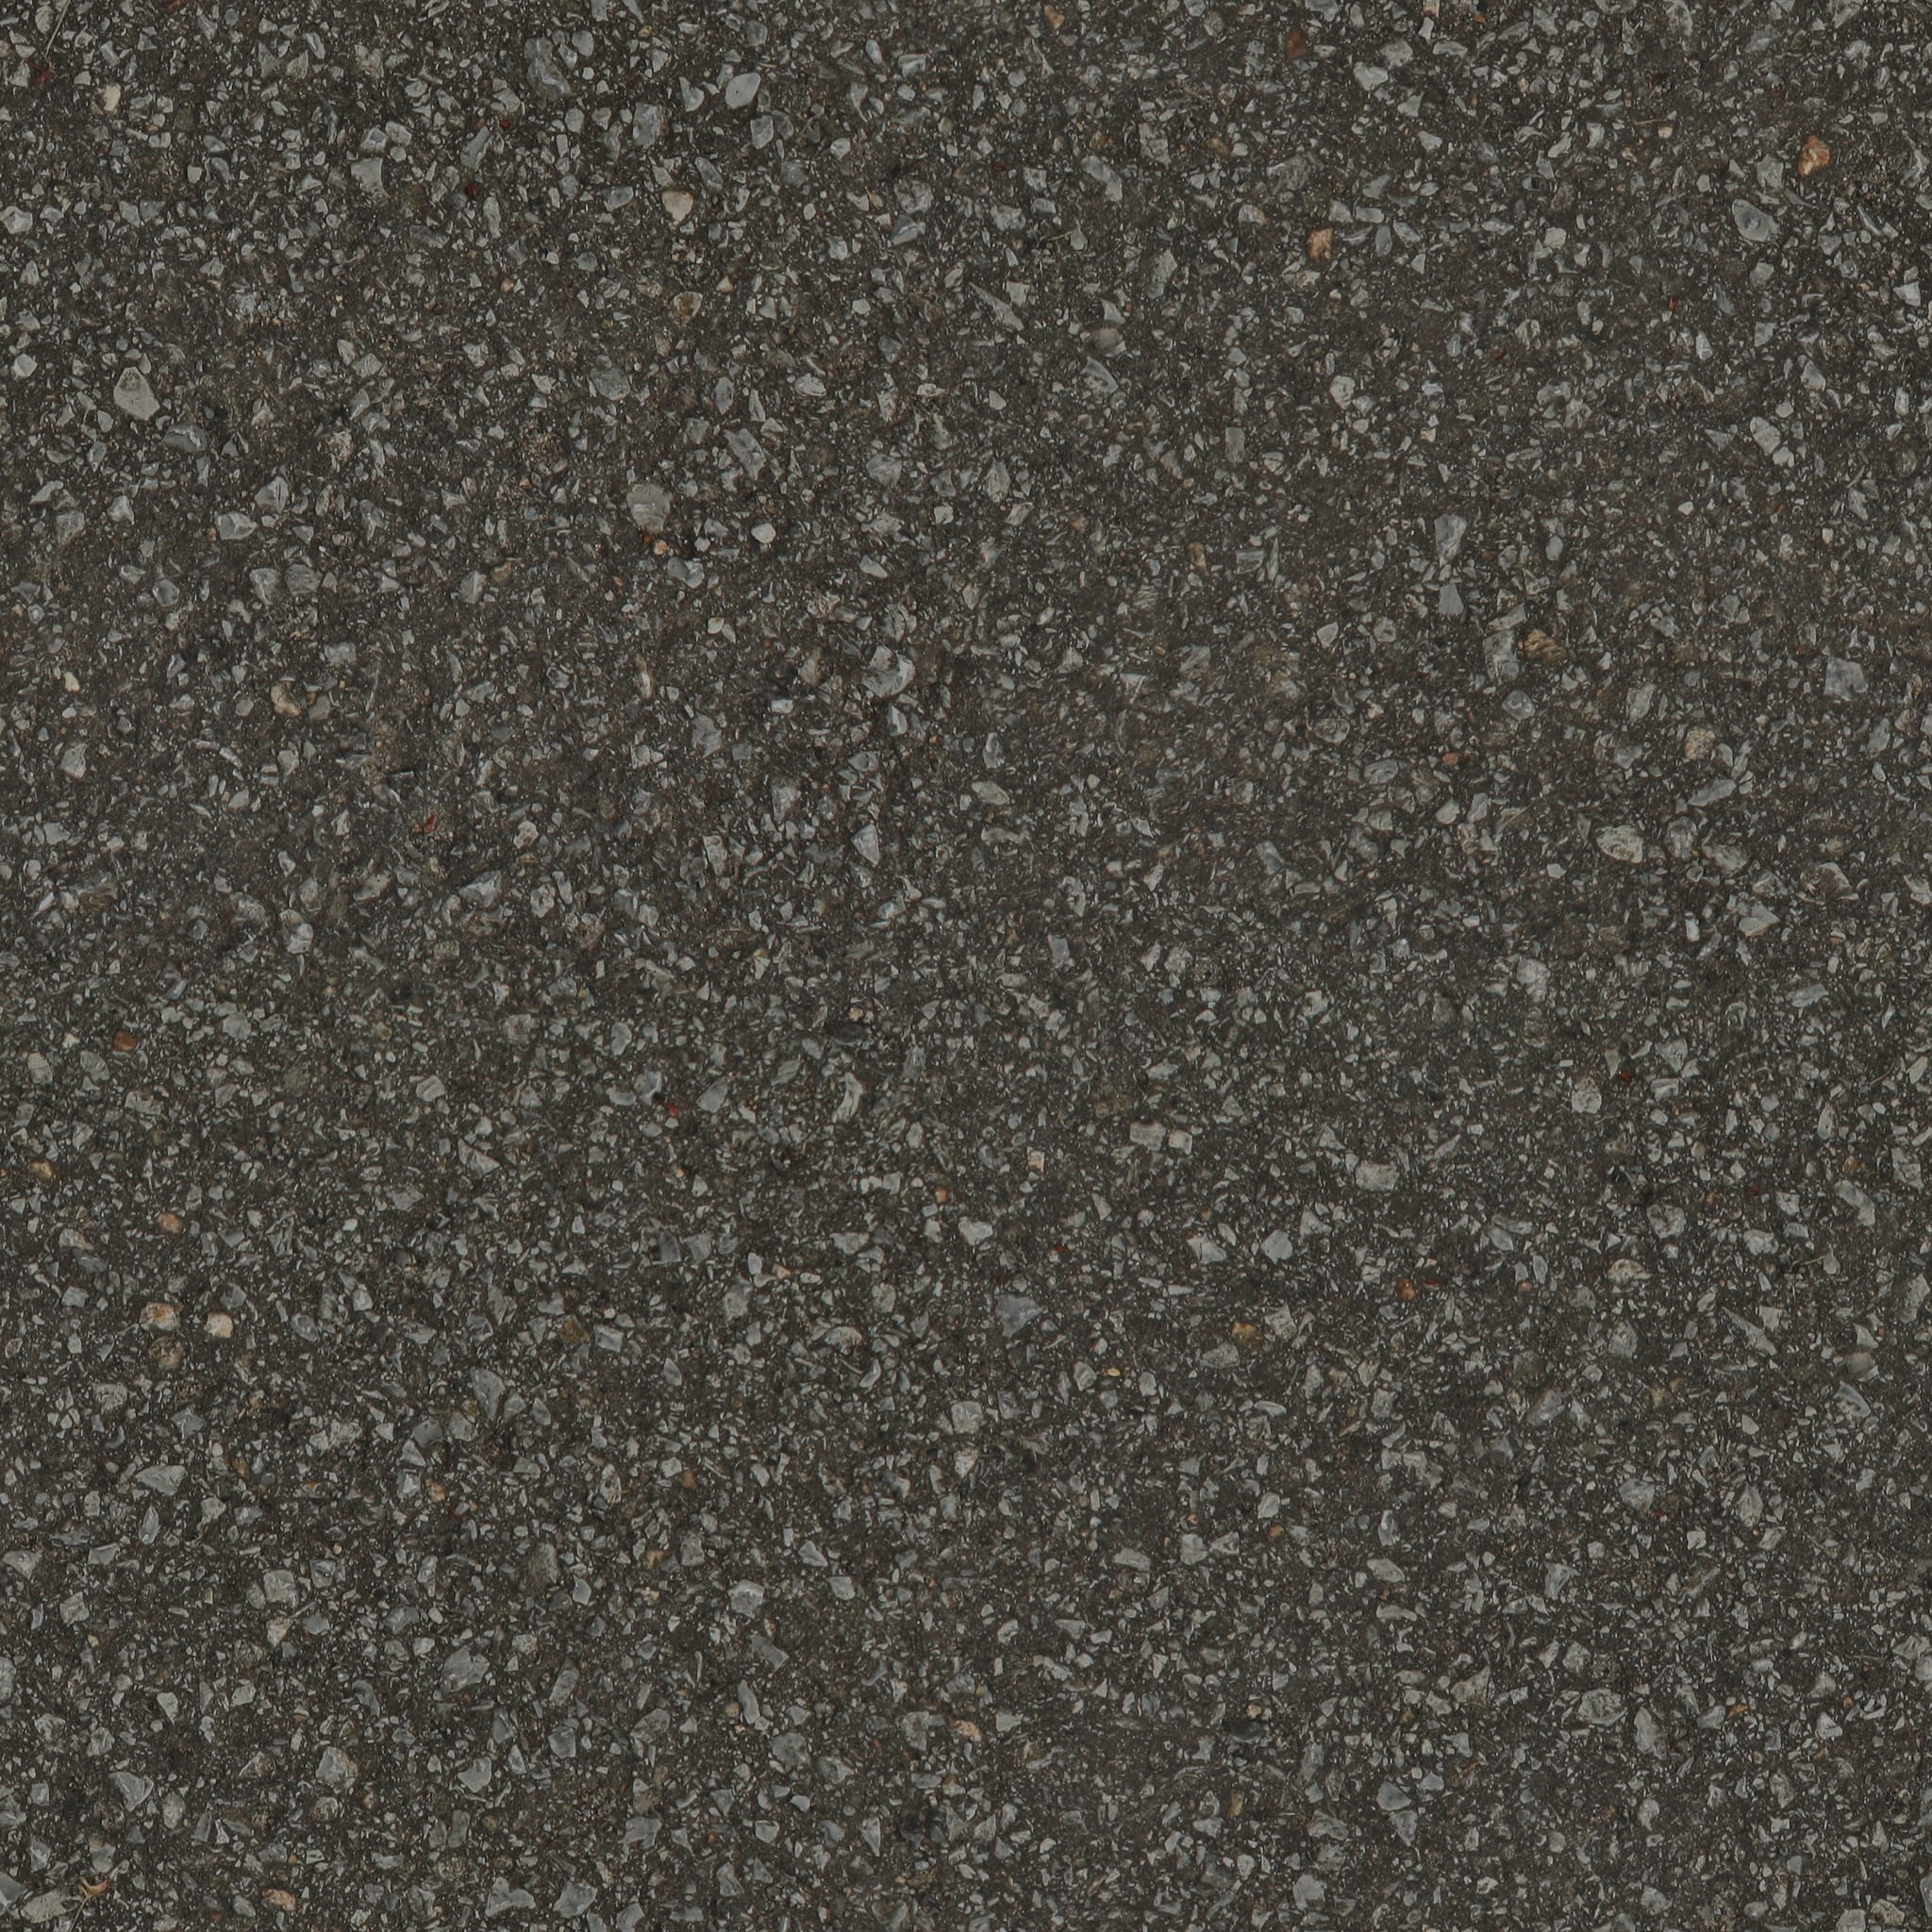 grey stone fragment, Texture, Seamless, Asphalt, tileable, blacktop